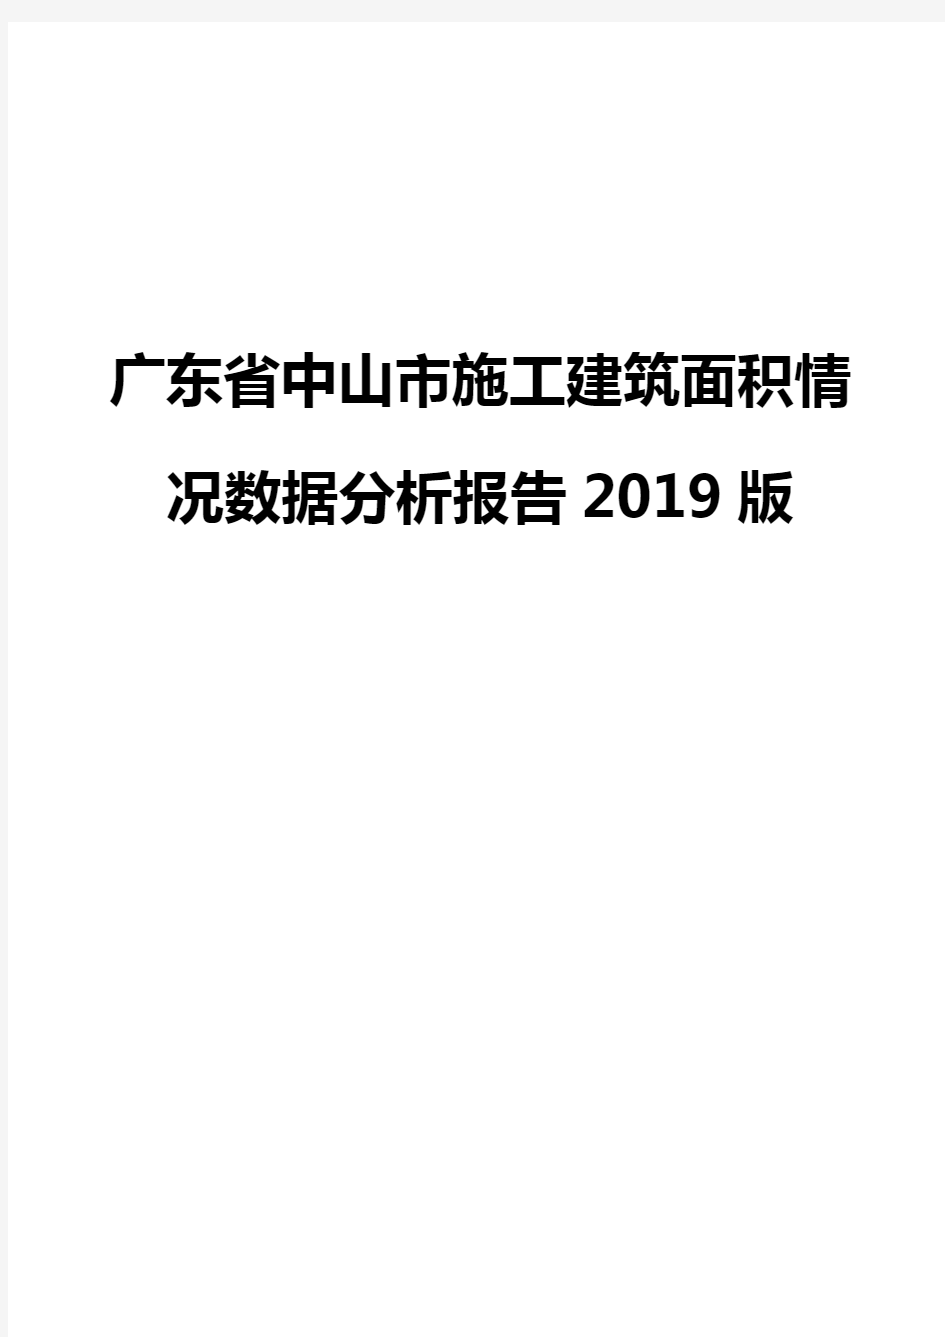 广东省中山市施工建筑面积情况数据分析报告2019版